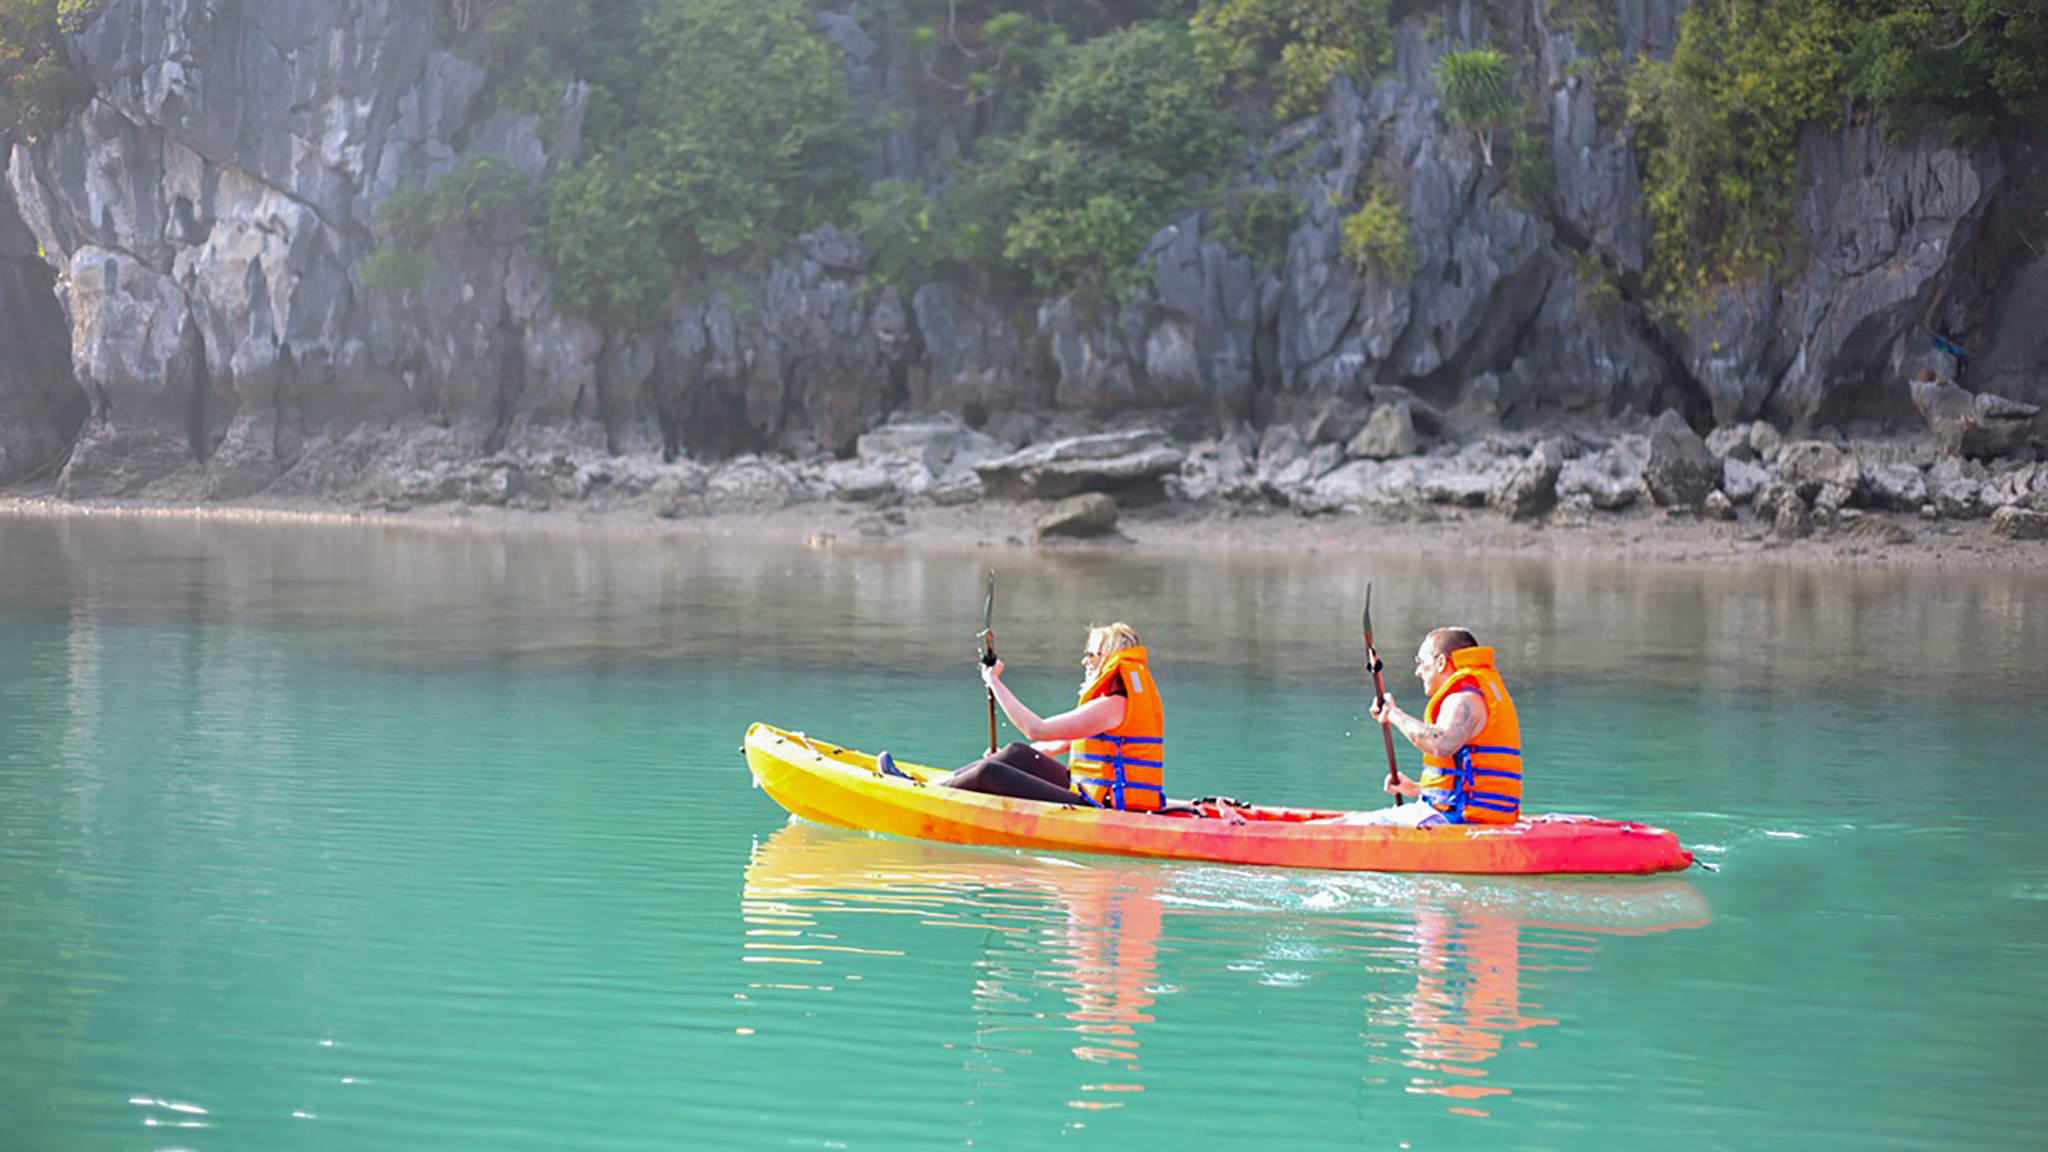 Explore Bai Tu Long by kayaking